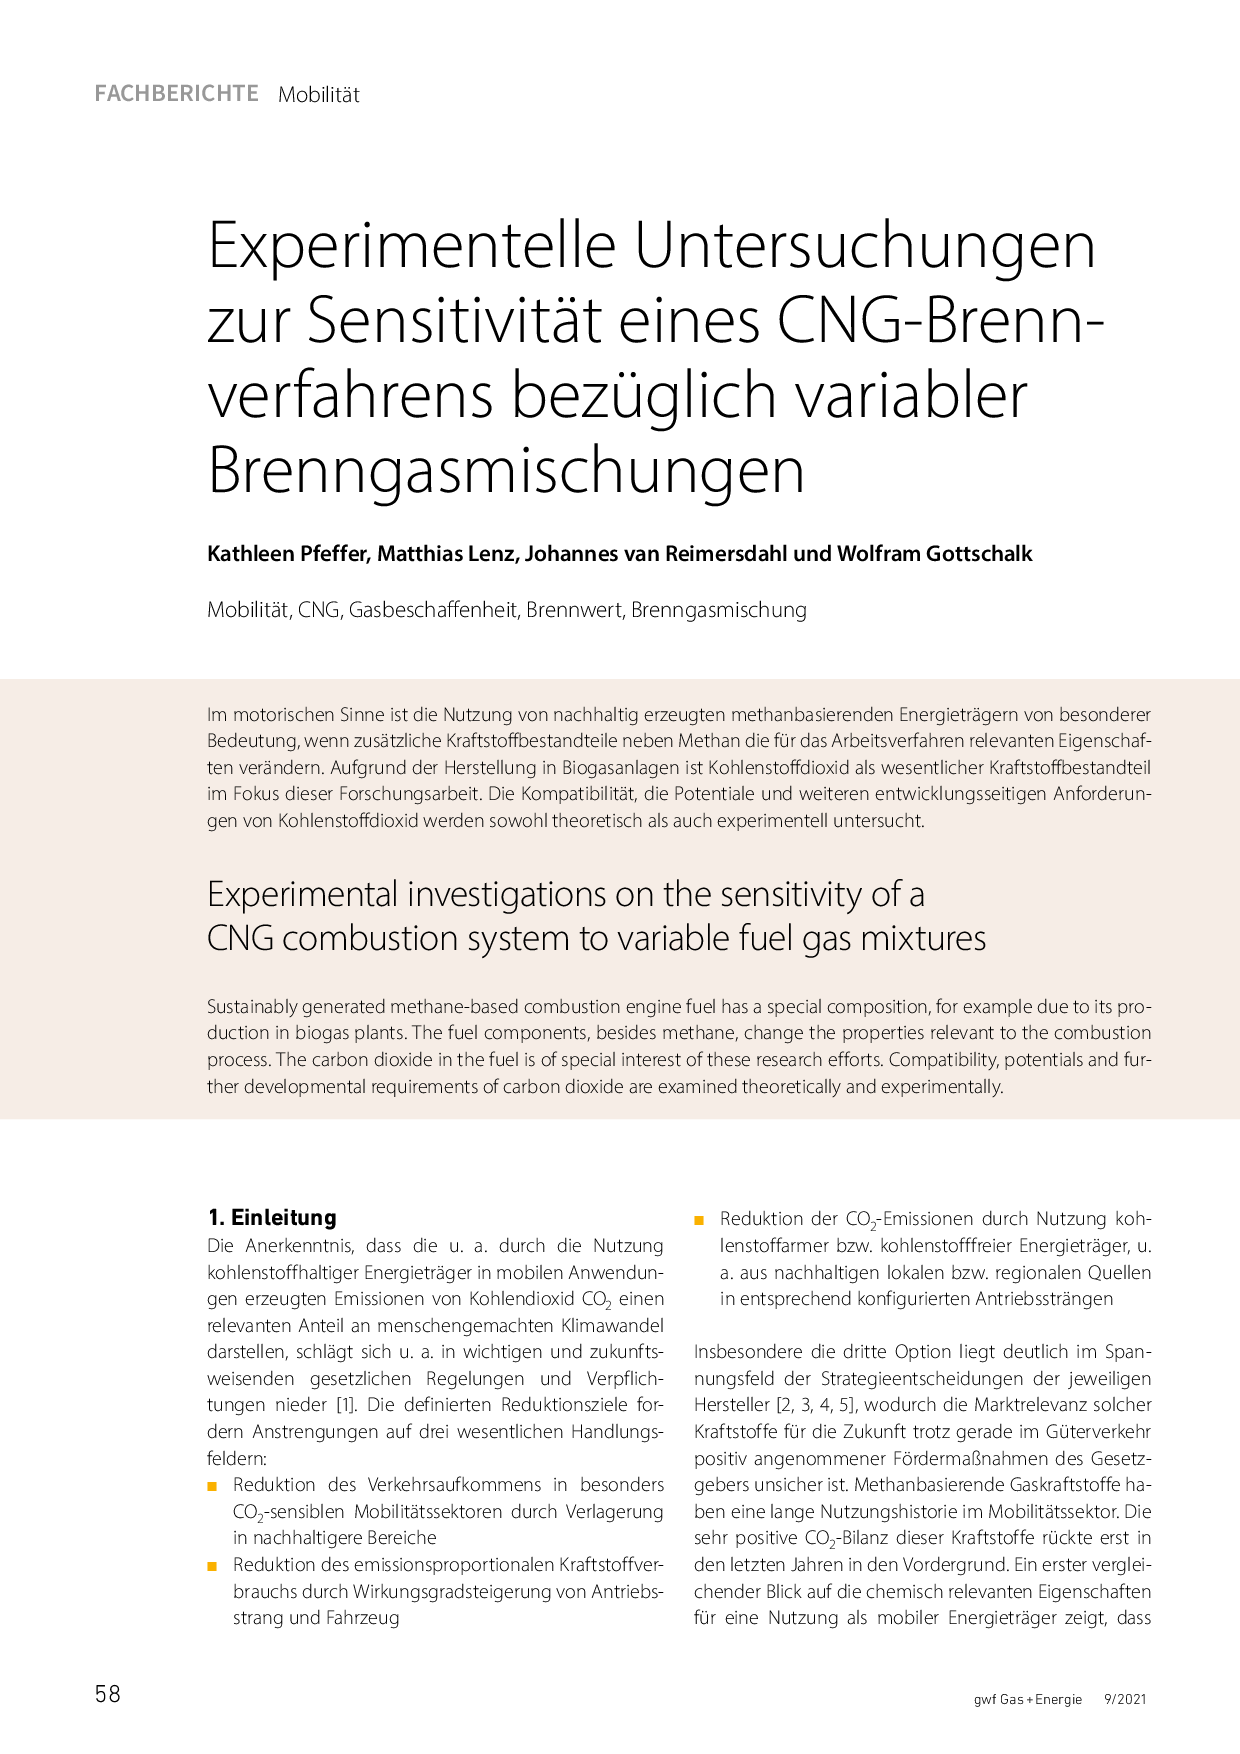 Experimentelle Untersuchungen zur Sensitivität eines CNG-Brennverfahrens bezüglich variabler Brenngasmischungen